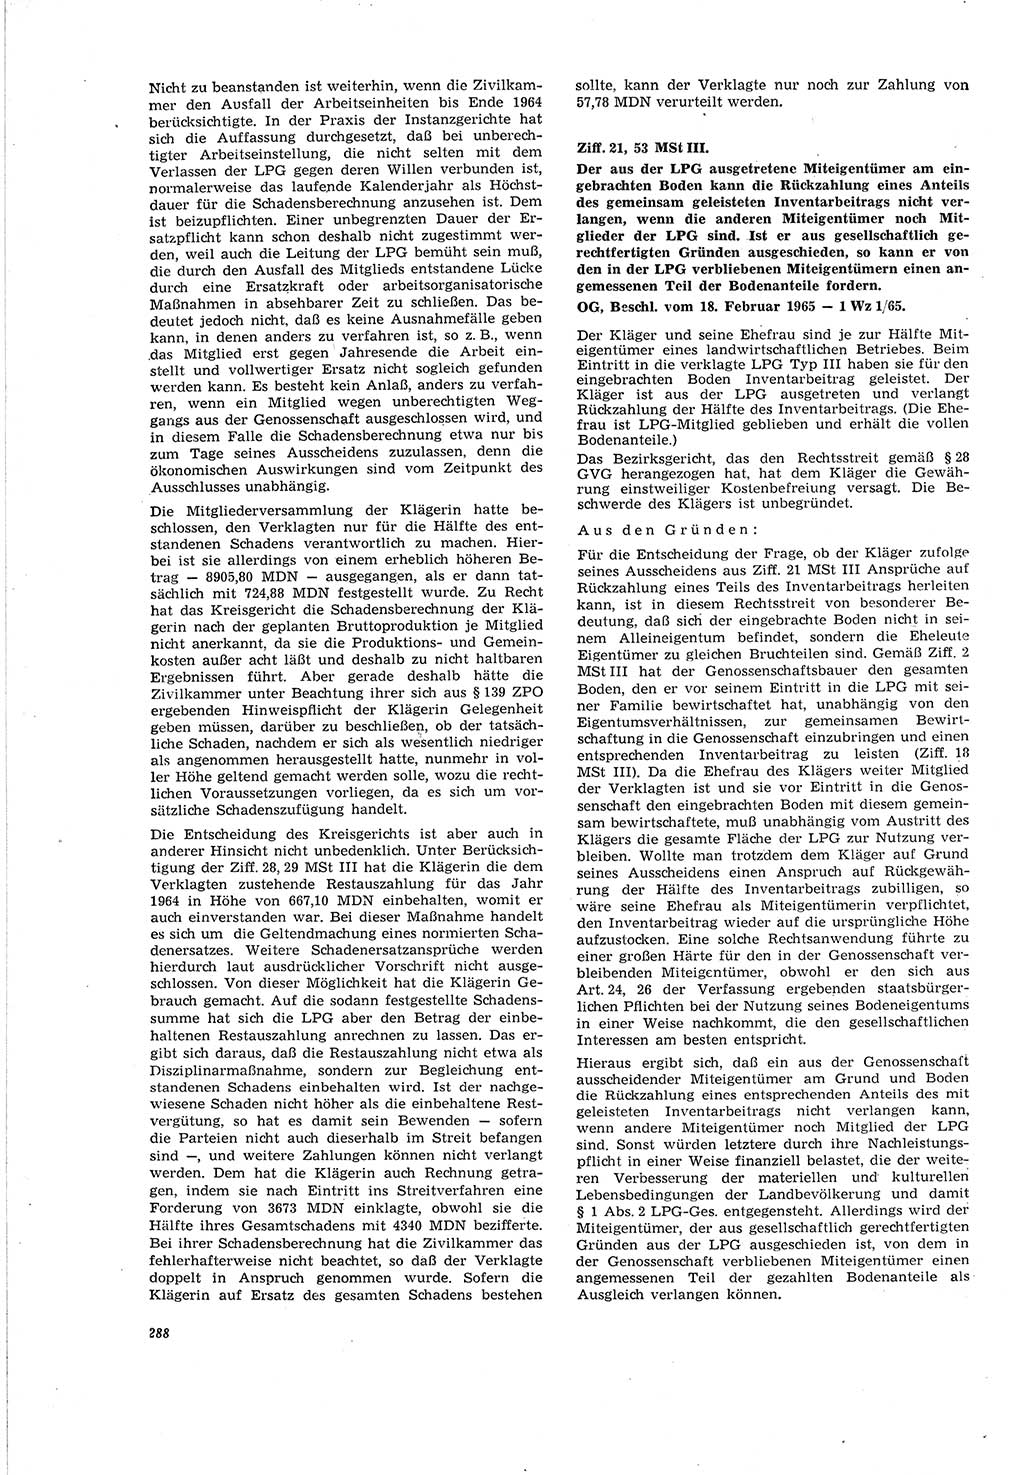 Neue Justiz (NJ), Zeitschrift für Recht und Rechtswissenschaft [Deutsche Demokratische Republik (DDR)], 20. Jahrgang 1966, Seite 288 (NJ DDR 1966, S. 288)